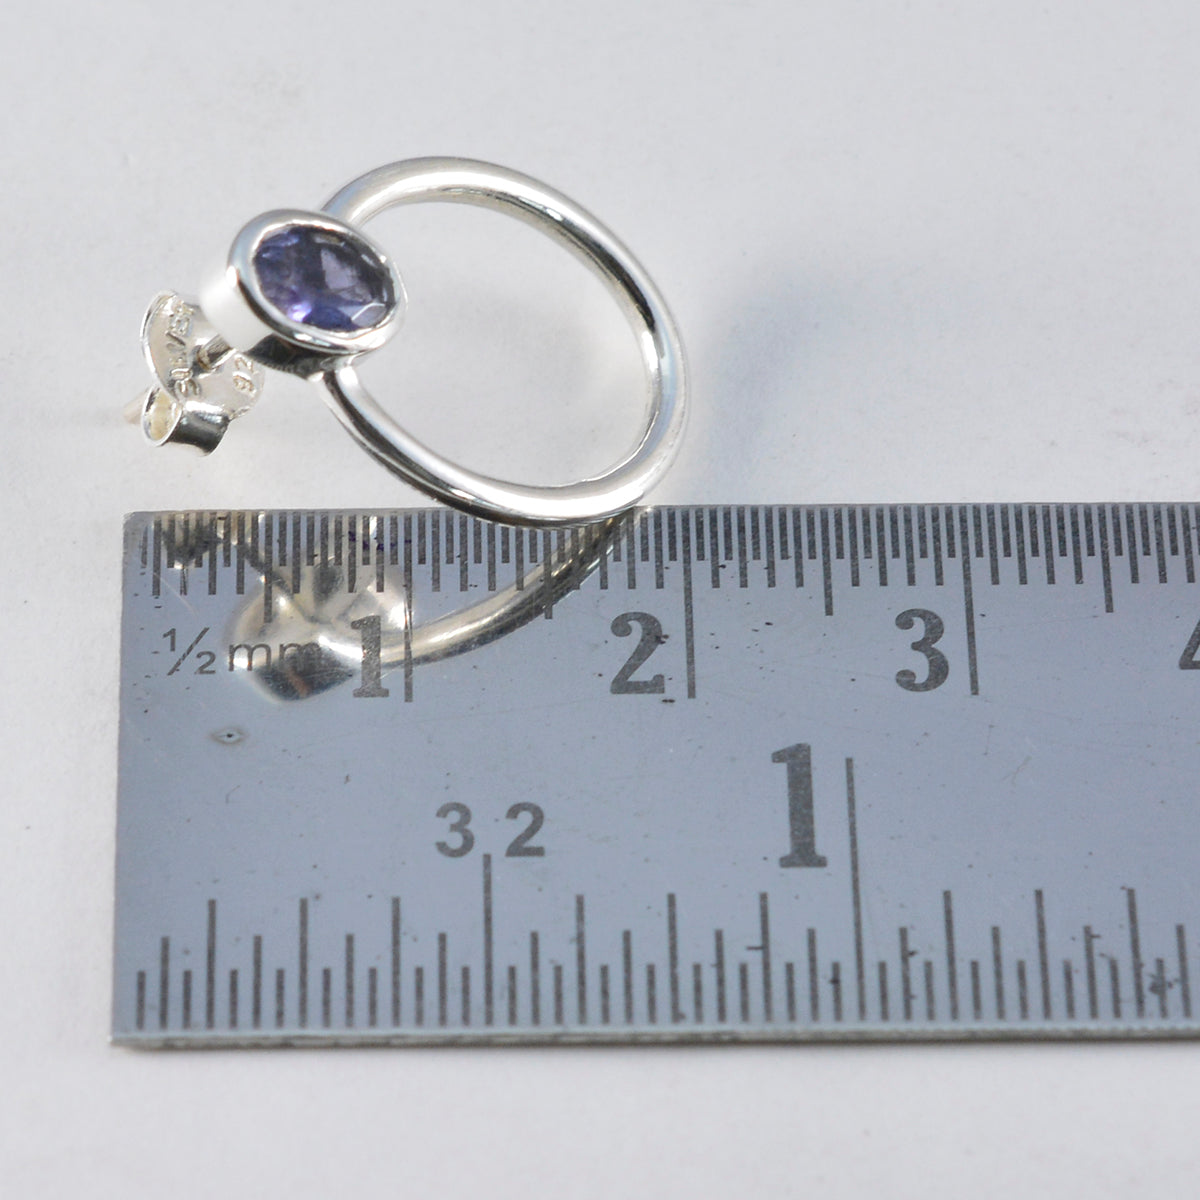 Riyo Beauteous 925 Sterling Silver Earring For Demoiselle Iolite Earring Bezel Setting Blue Earring Stud Earring